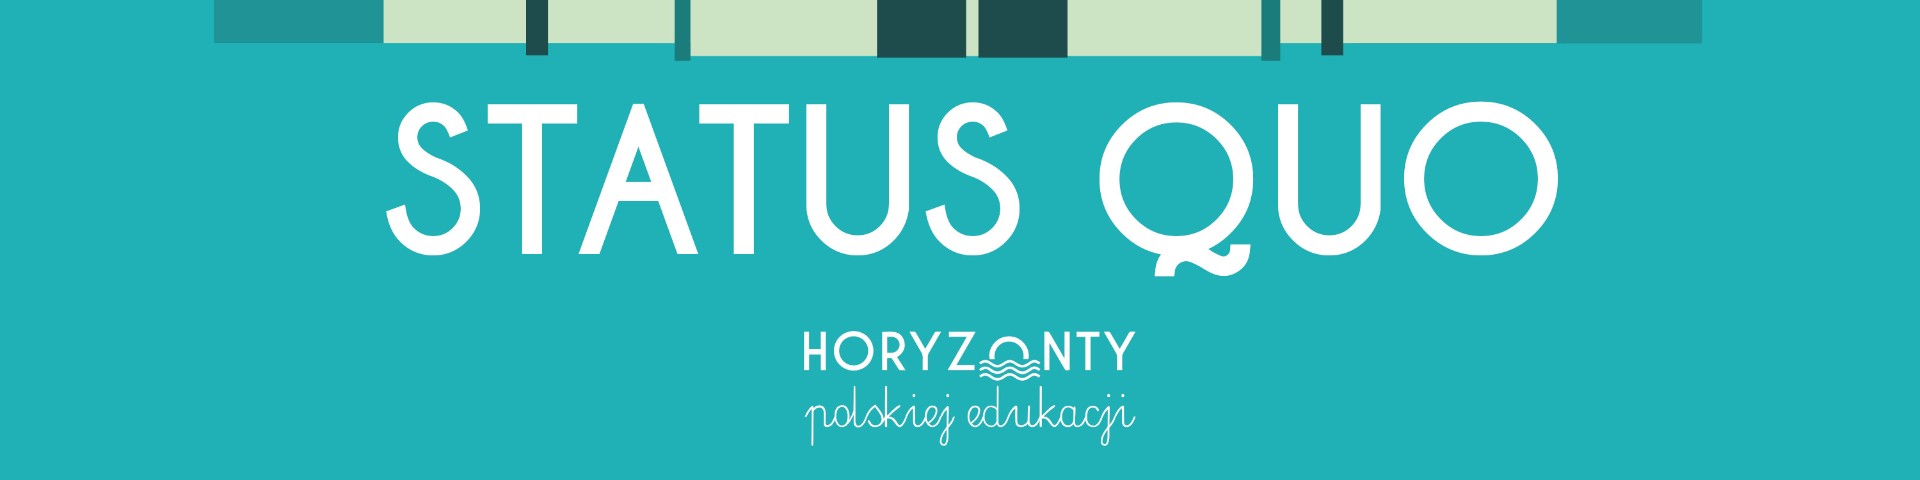 Horyzonty polskiej edukacji – status quo